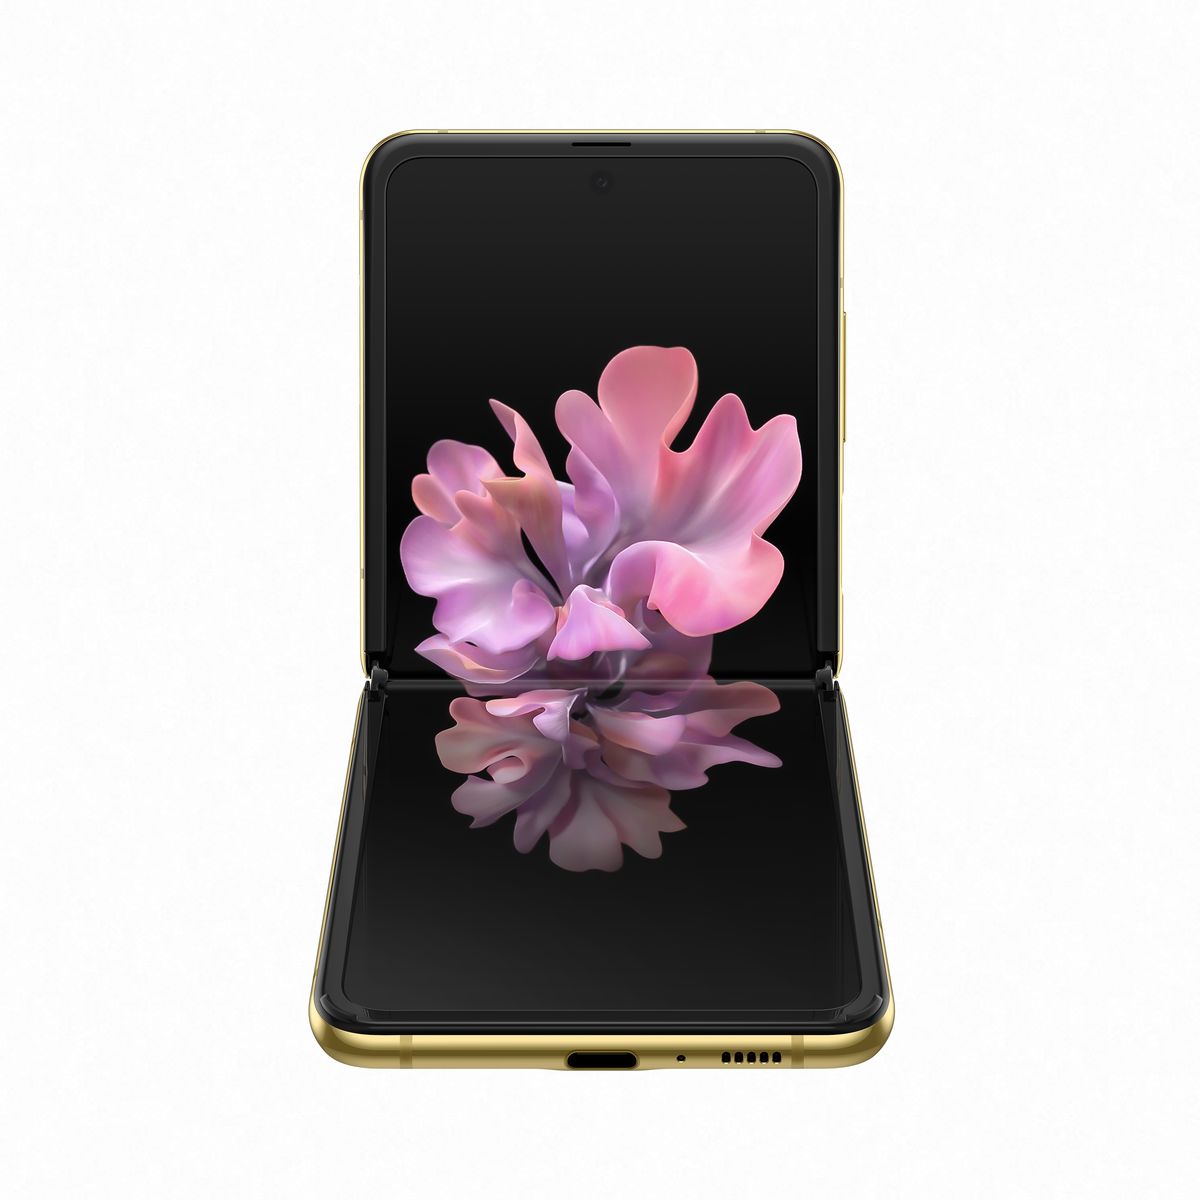 Samsung Galaxy Z Flip Smartphone Gold 256GB/8GB/6.7 Inch FHD+/12MP+10MP/3300mAh/Single + eSIM